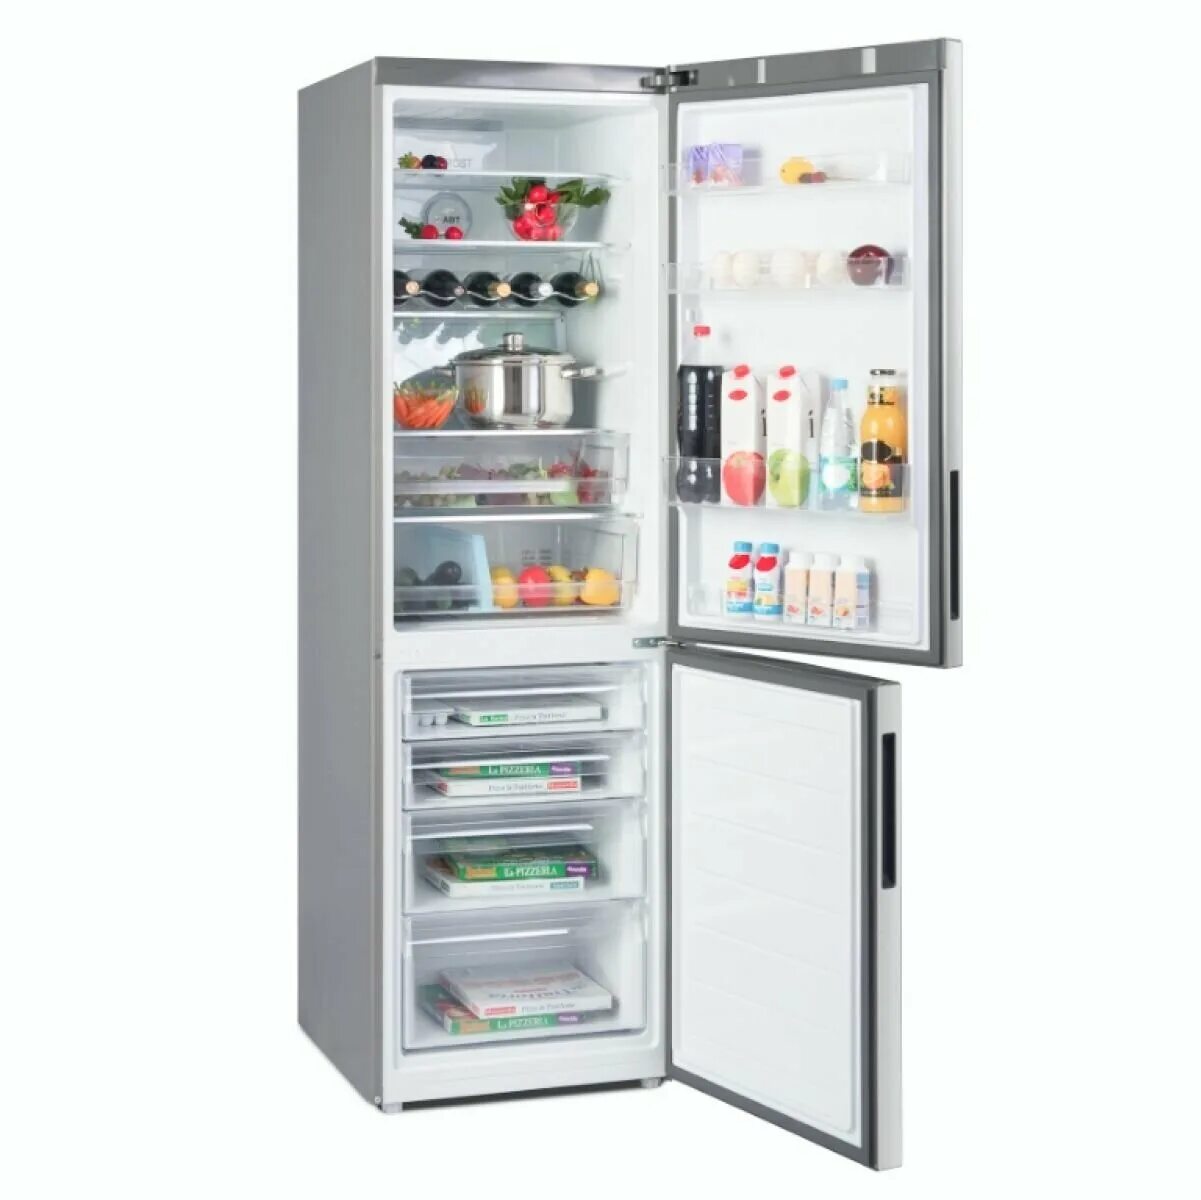 Haier c2f636c. Холодильник Haier c2f636cfrg. Холодильник Хайер 636. Холодильник RF Haier c2f636cwfd. Холодильник Haier c2f636cfrg, серебристый.